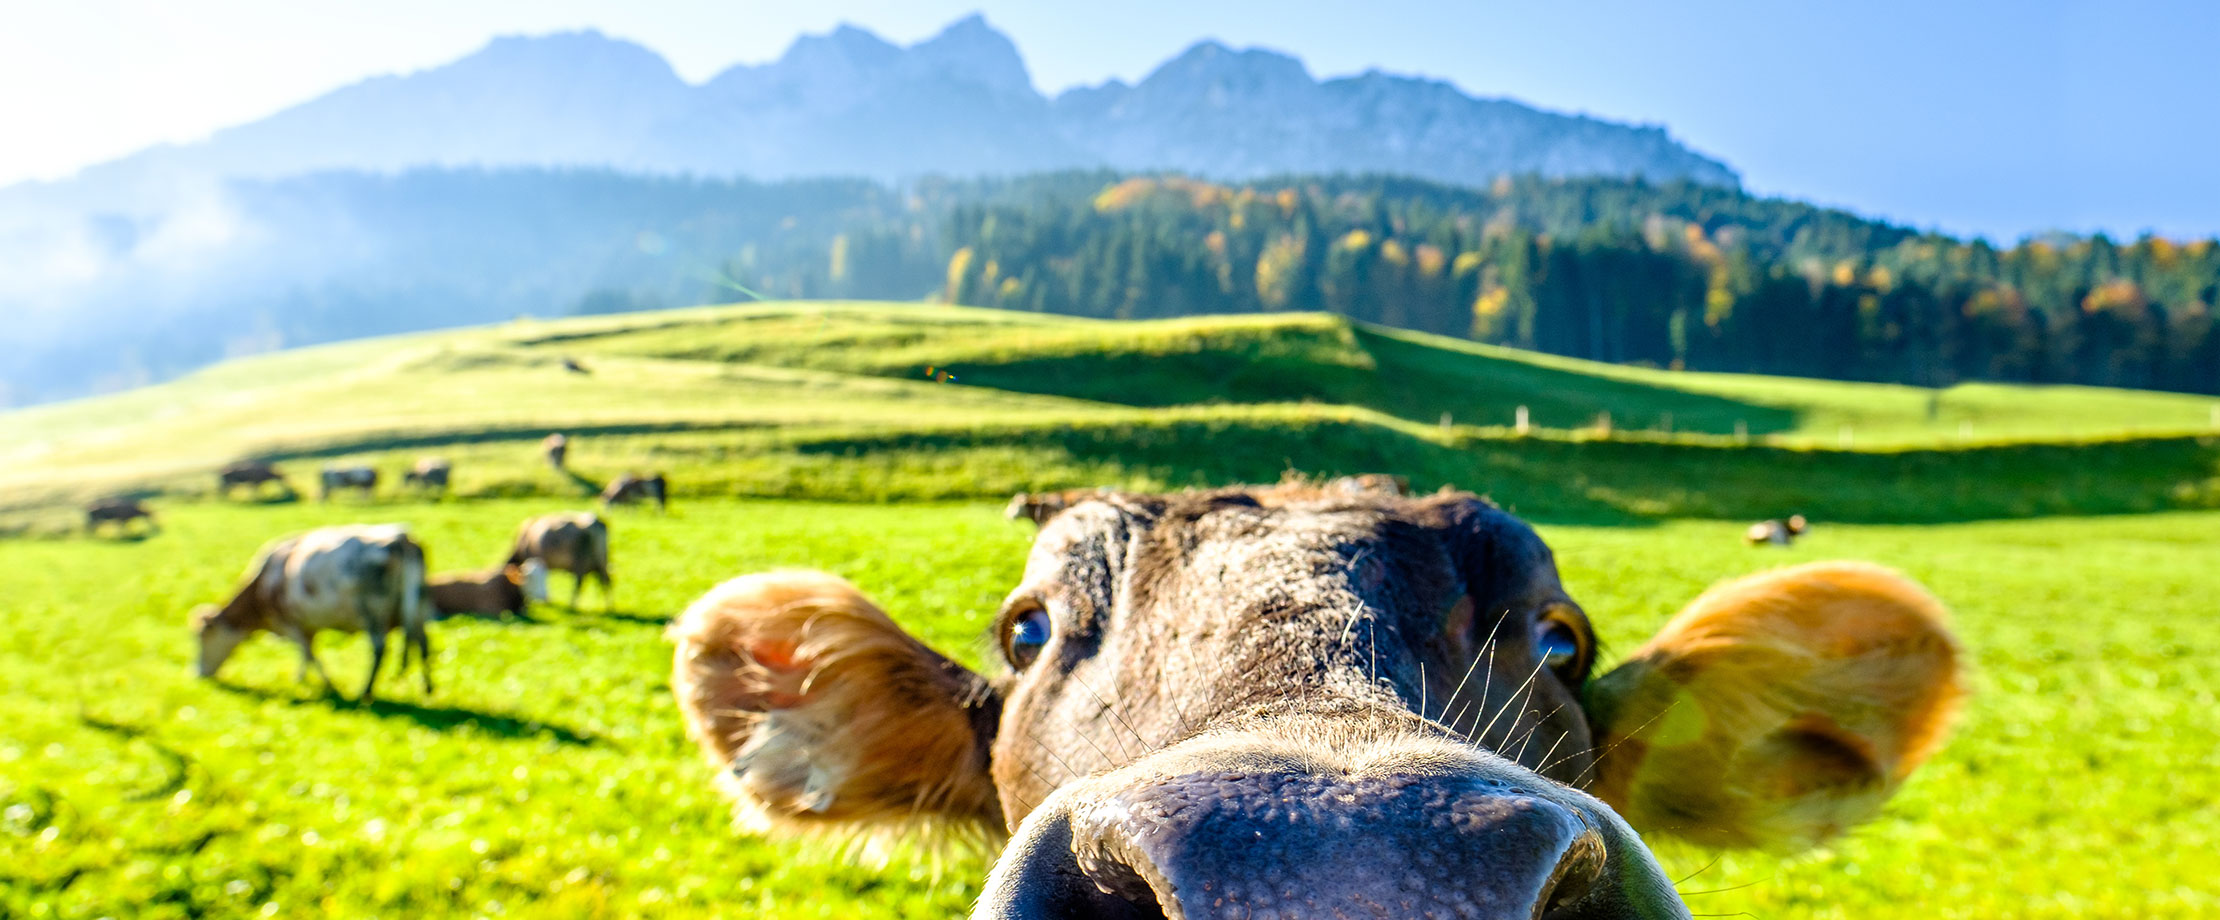 Eine Kuh auf der Weide blickt von unten in die Kamera. Sie wirkt neugierig und hat keine Angst vor dem Kameramann. Im Hintergrund grasen weitere Kühe.